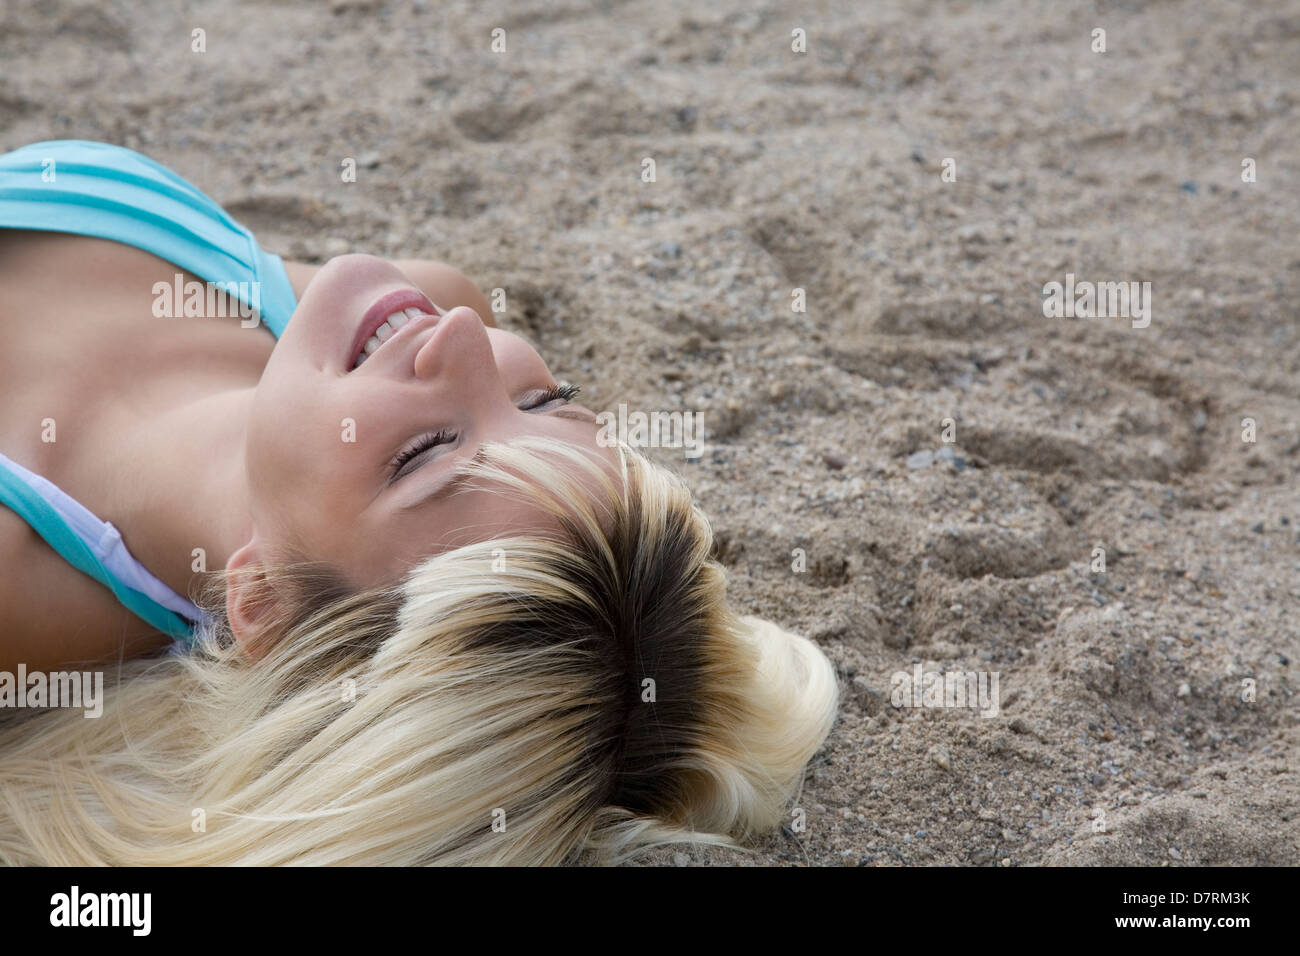 Frau, blond, Valentine, ausruhen, entspannen, sand, Sonne, Strand, sand, Lächeln, Herz, Zeichnung Stockfoto